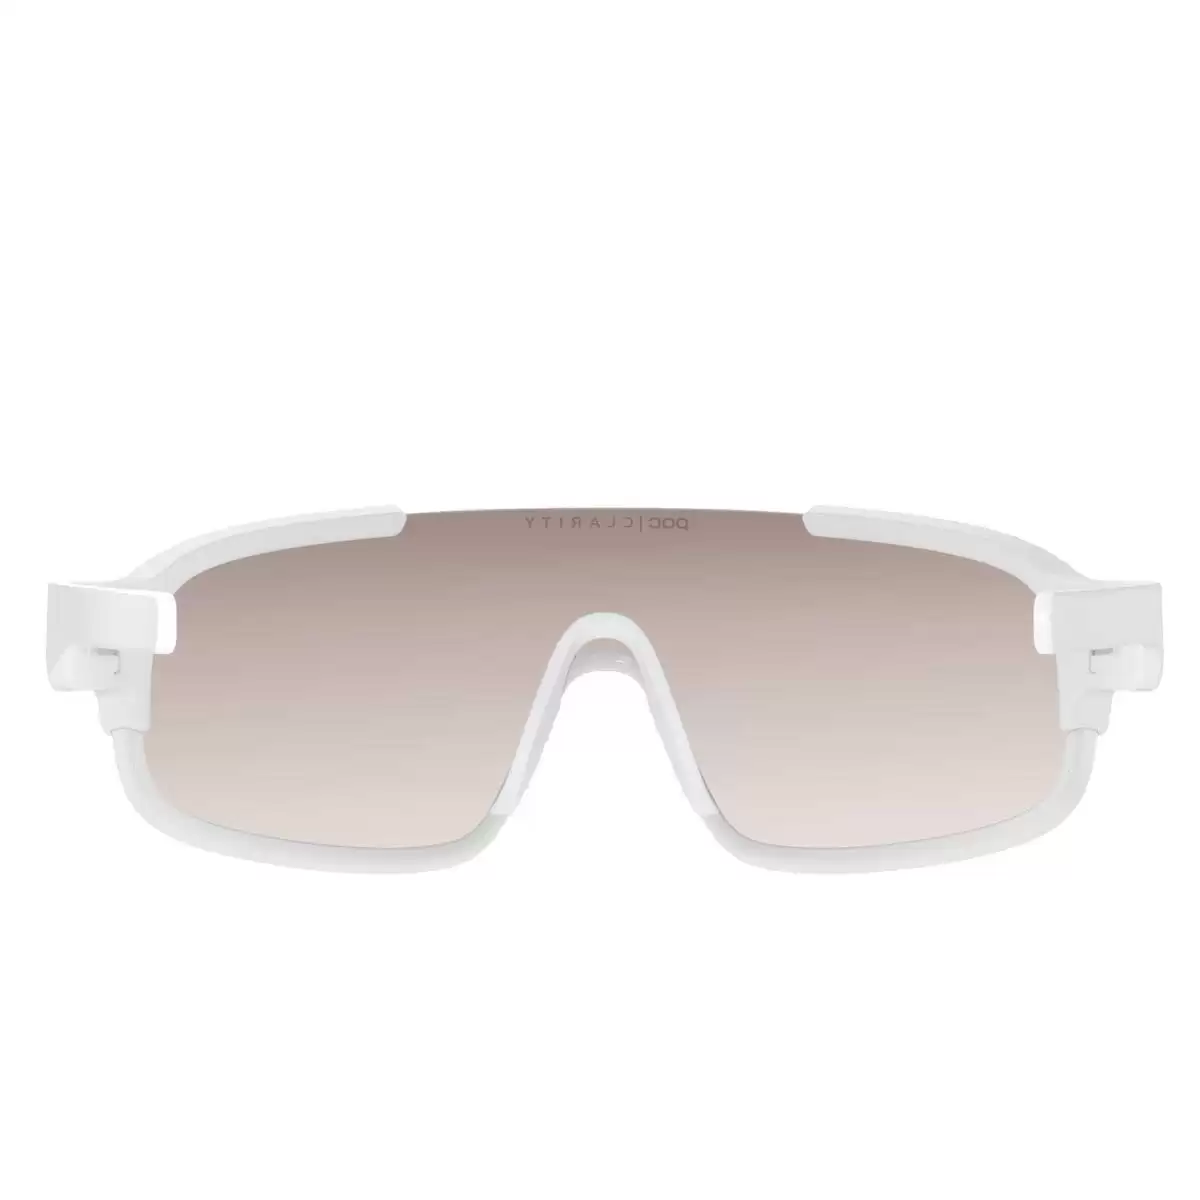 Óculos de sol Crave branco com lentes transparentes Marrons #2